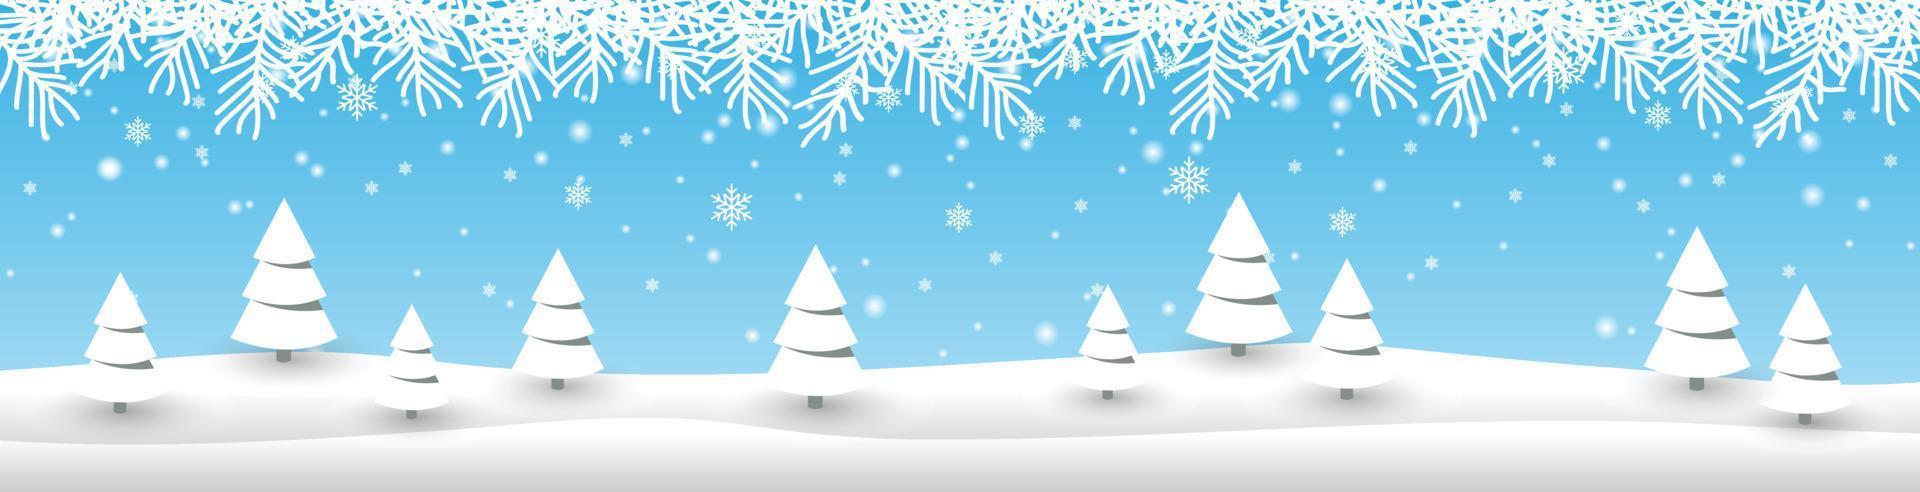 plantilla de banner de invierno diseño de vectores creativos, tema de navidad y año nuevo, con abeto en la colina de nieve